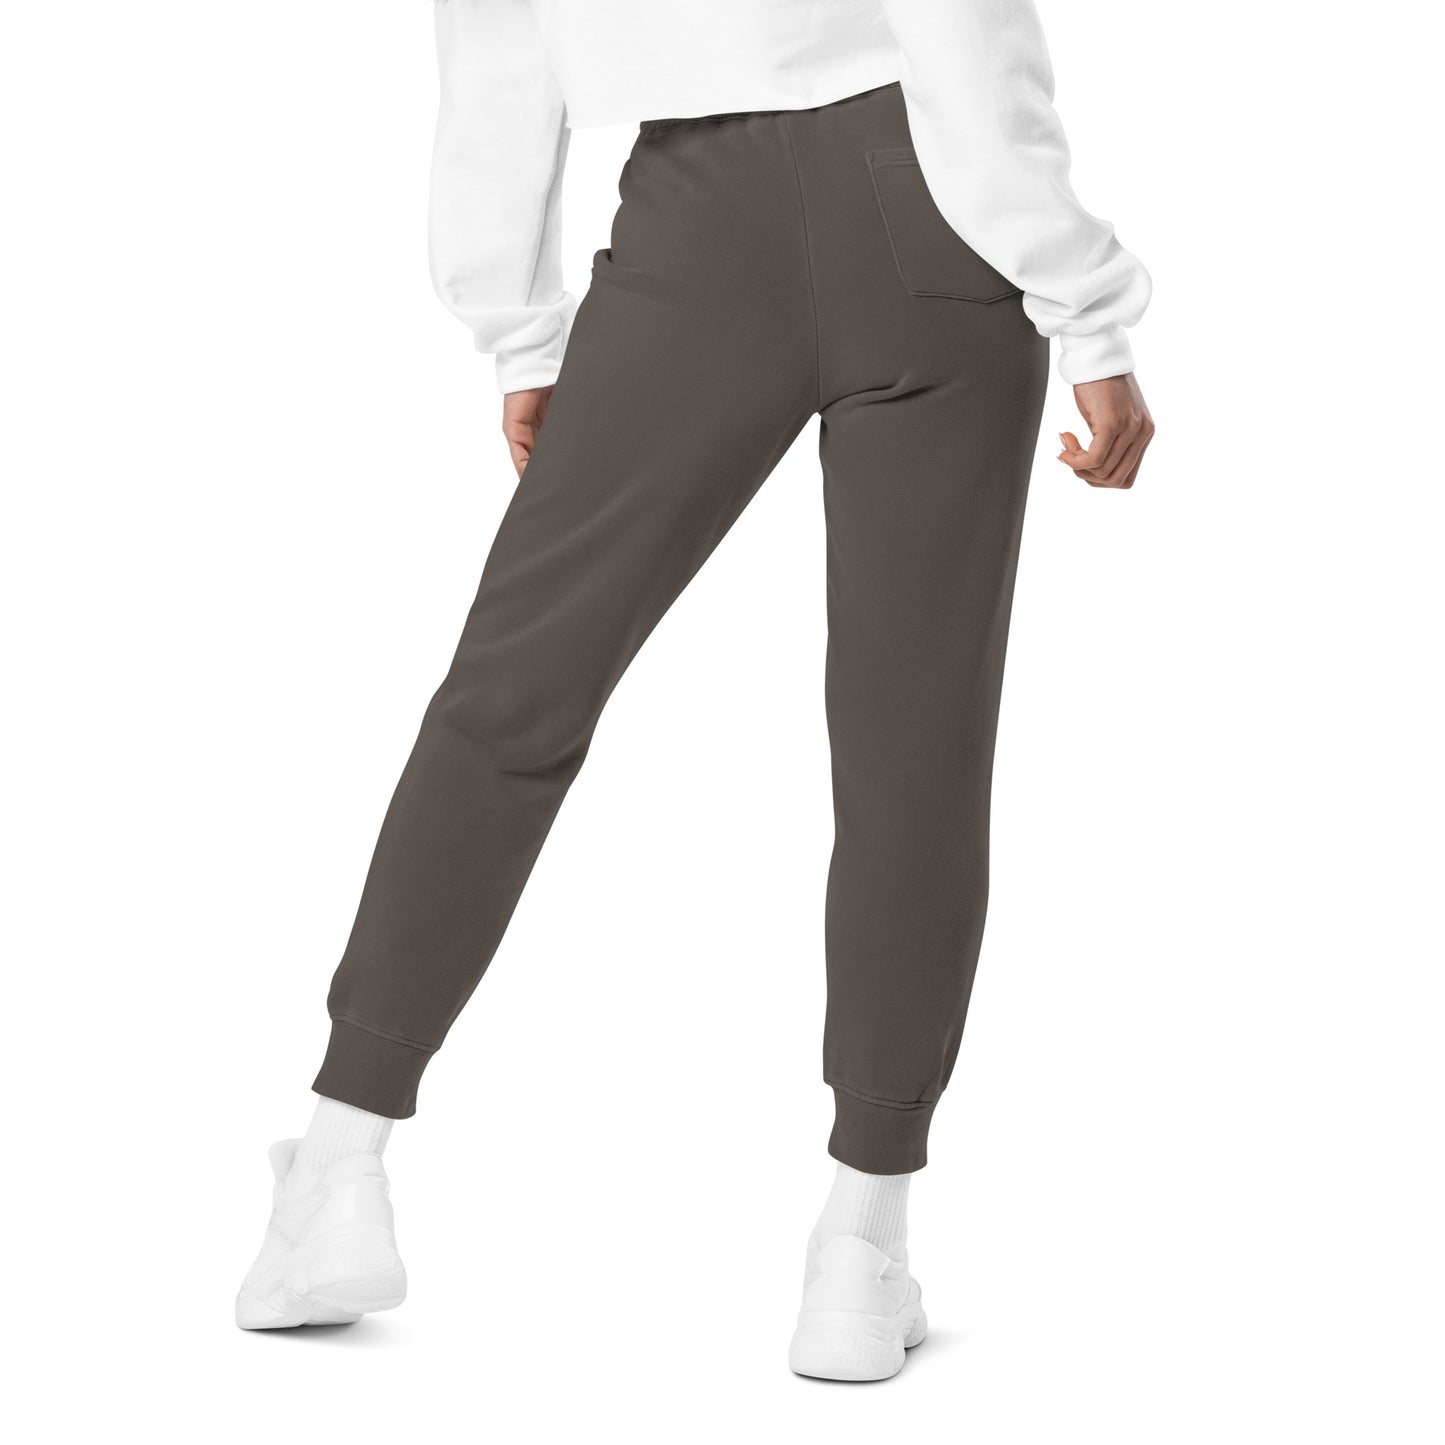 Badlands Unisex Pigment-Dyed Sweatpants (white logo)